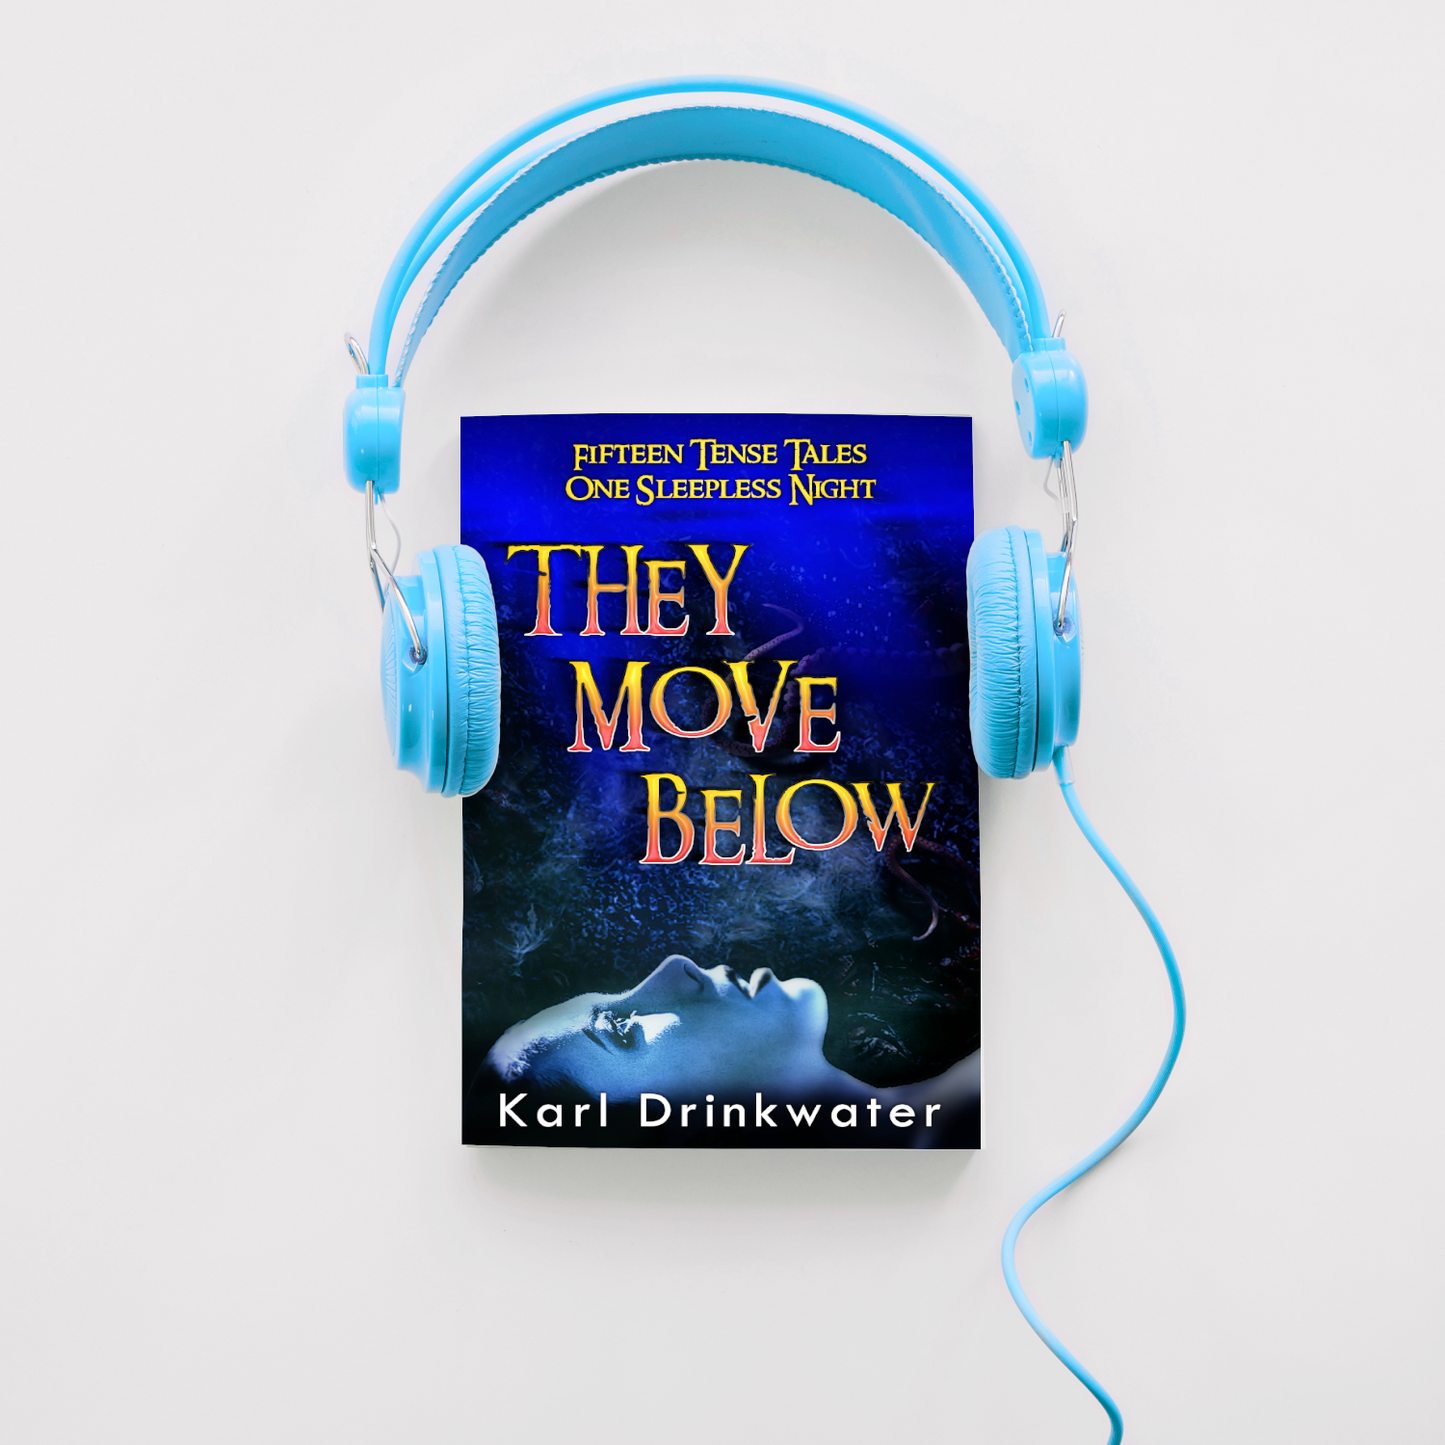 They Move Below (audiobook)